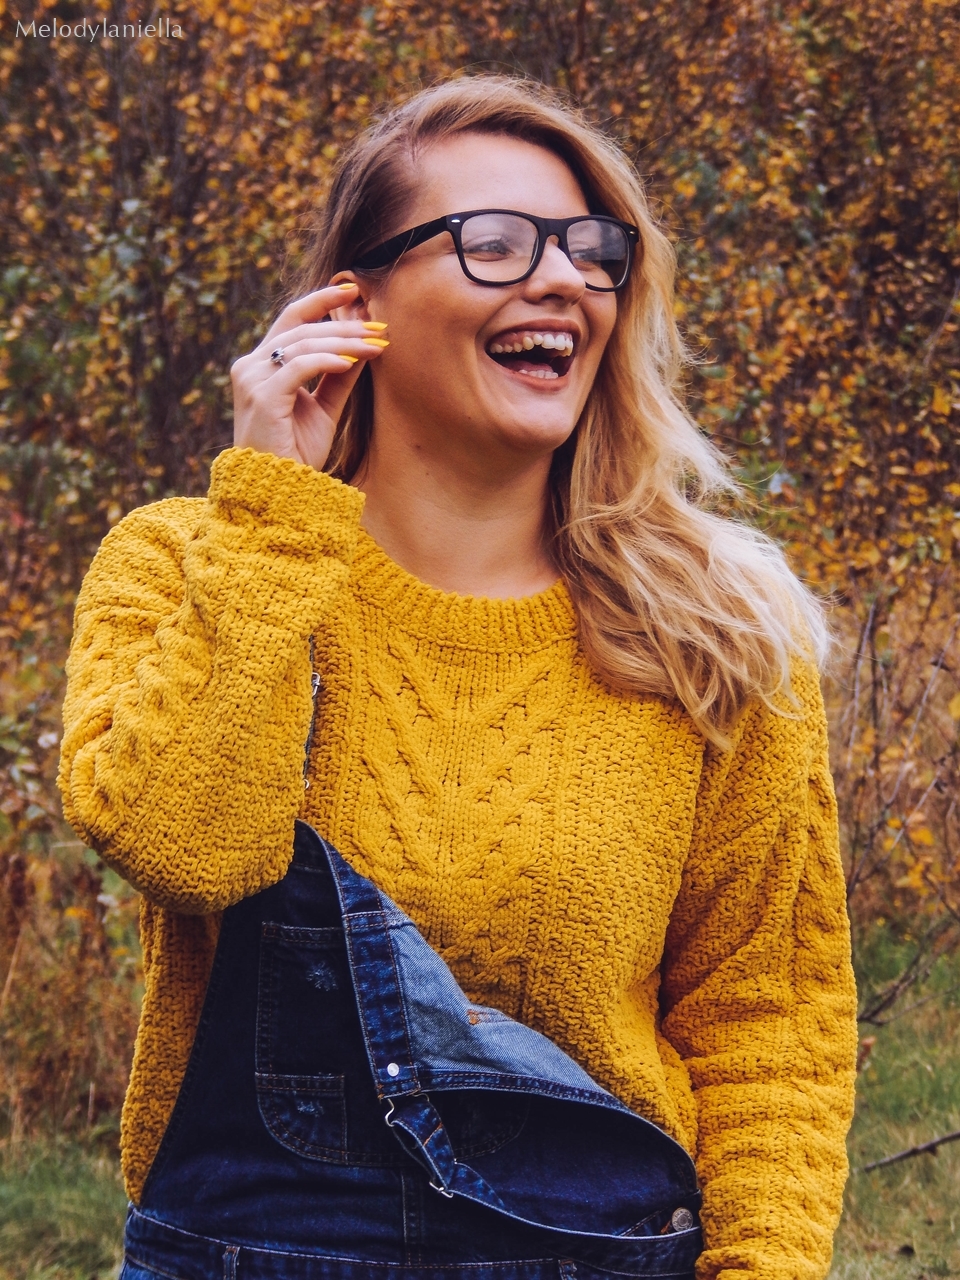 12 jeansowe długie ogrodniczki z czym nosić żółty sweter zakupy w primark ceny jakość daniel wellington opinie zegarki stylizacja minionek cosplay jeansowe buty łuków okulary zerówki blond fryzury